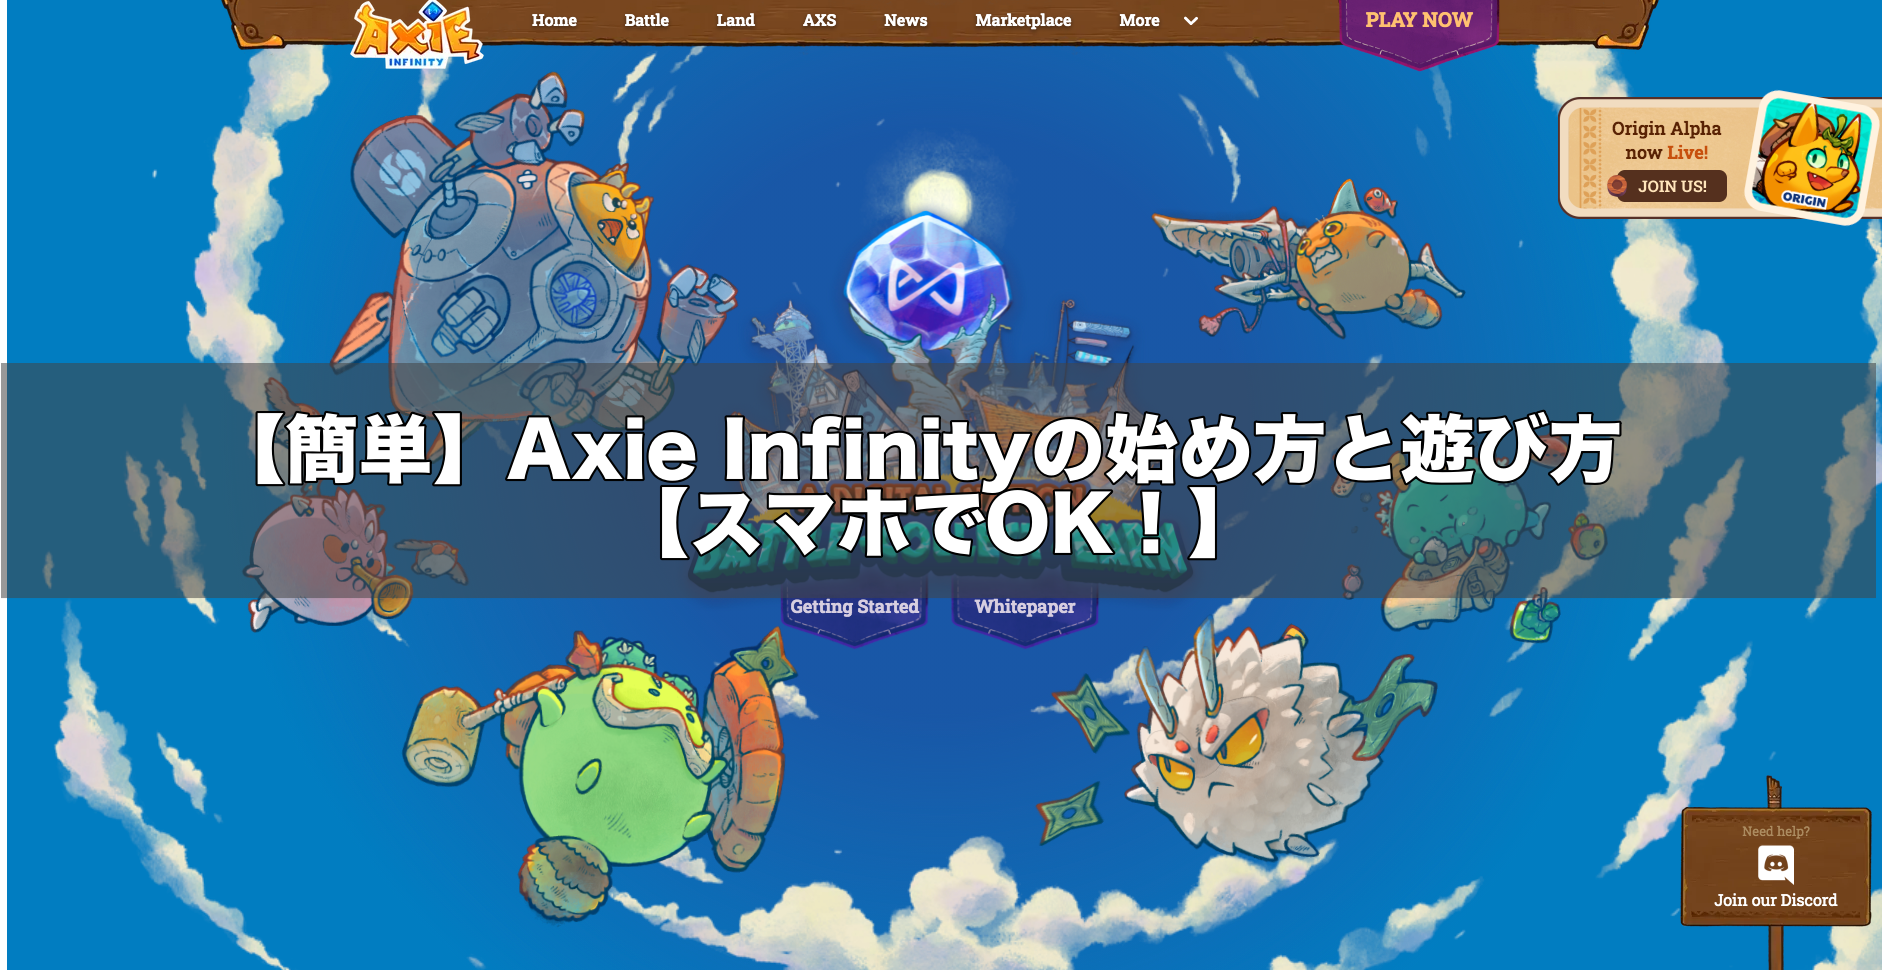 axie infinity 始め方 スマホ